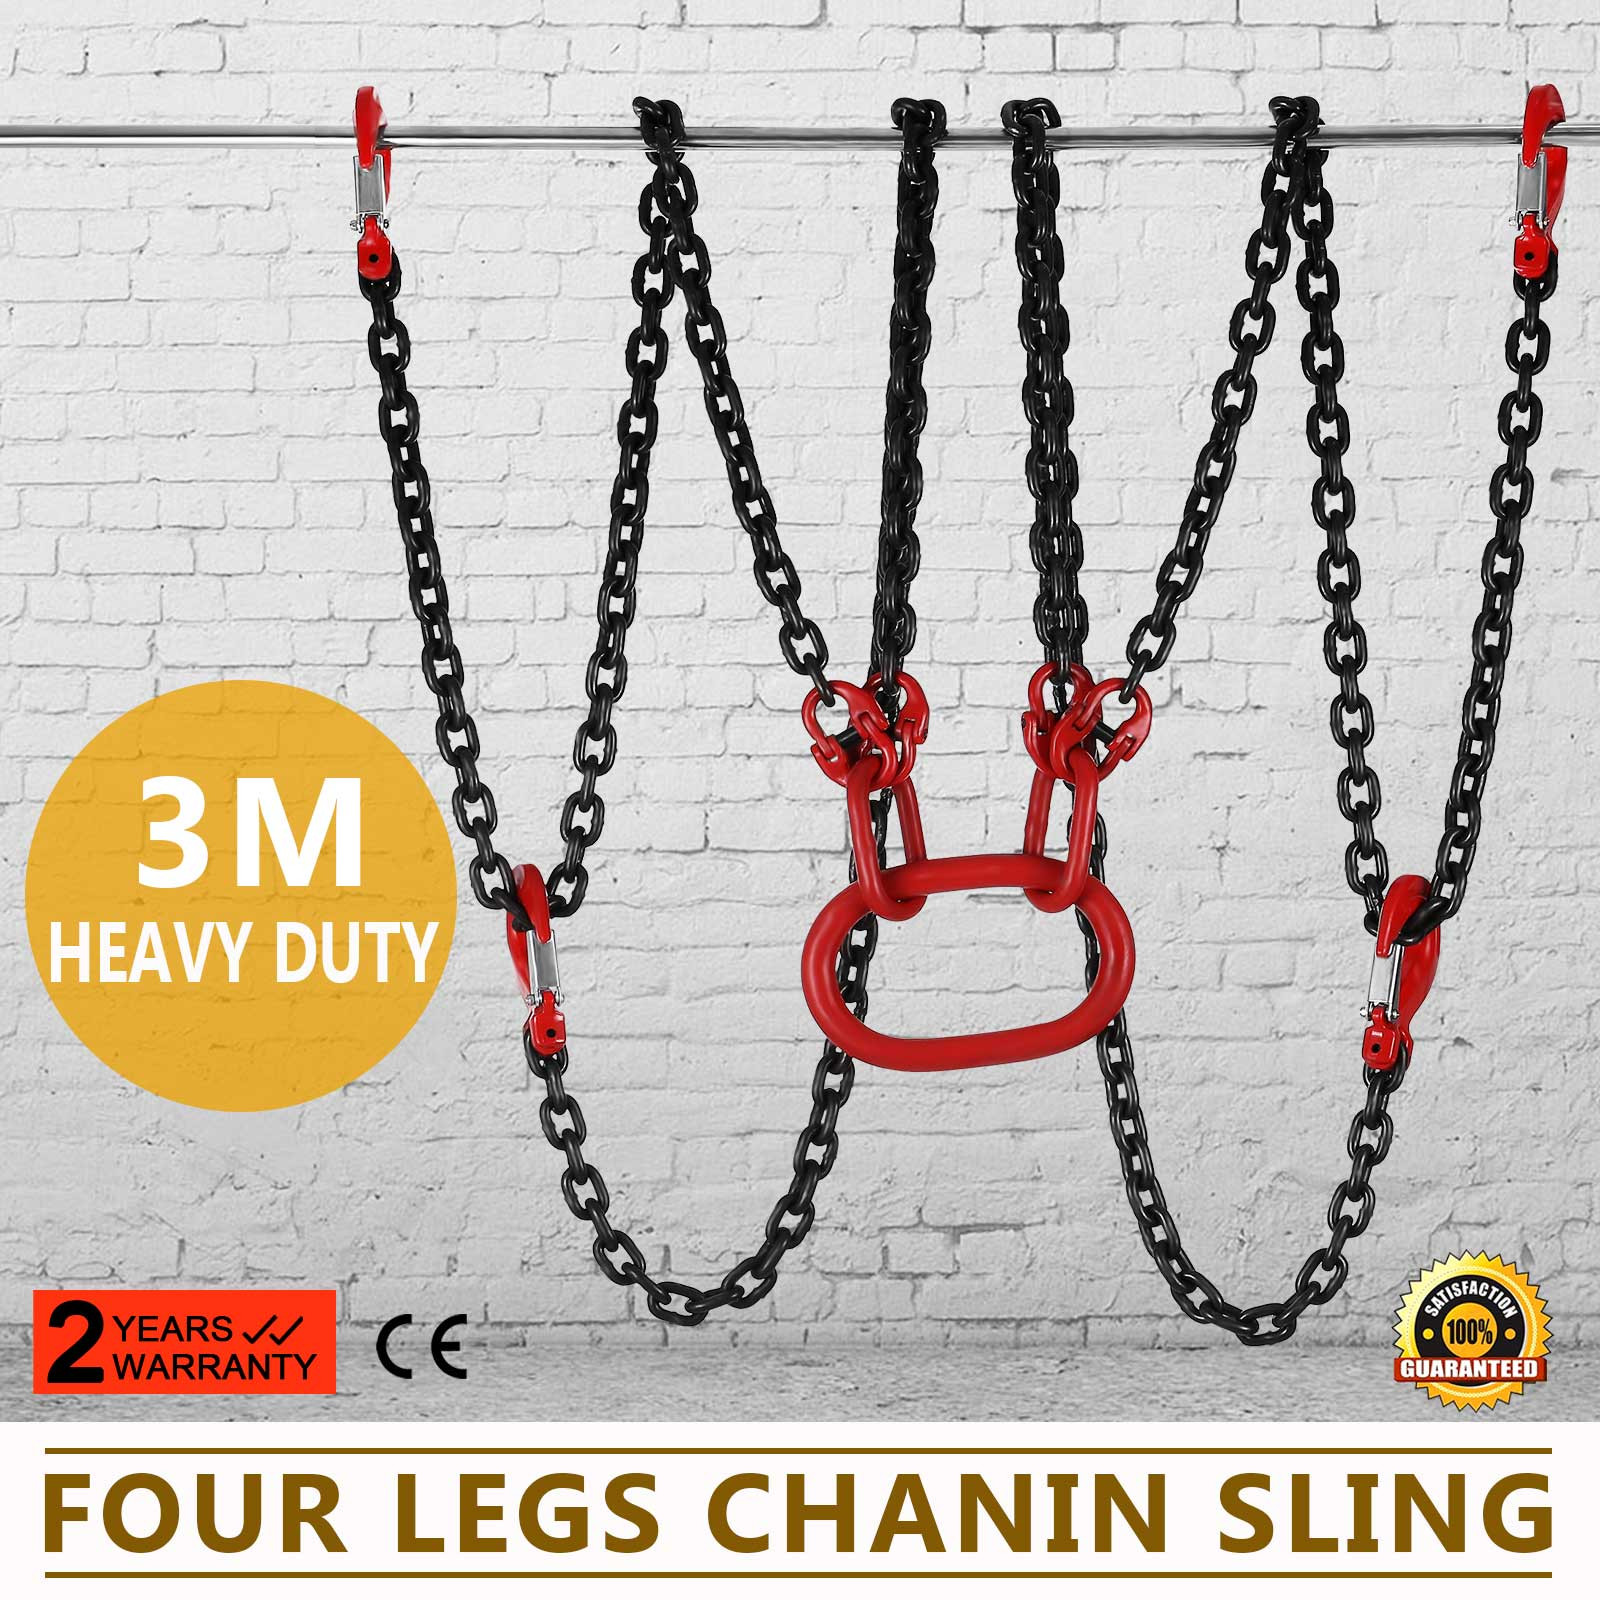 VEVOR 5/16x10' Lifting Chain Sling G80 11023lbs/5Ton w/4 Legs